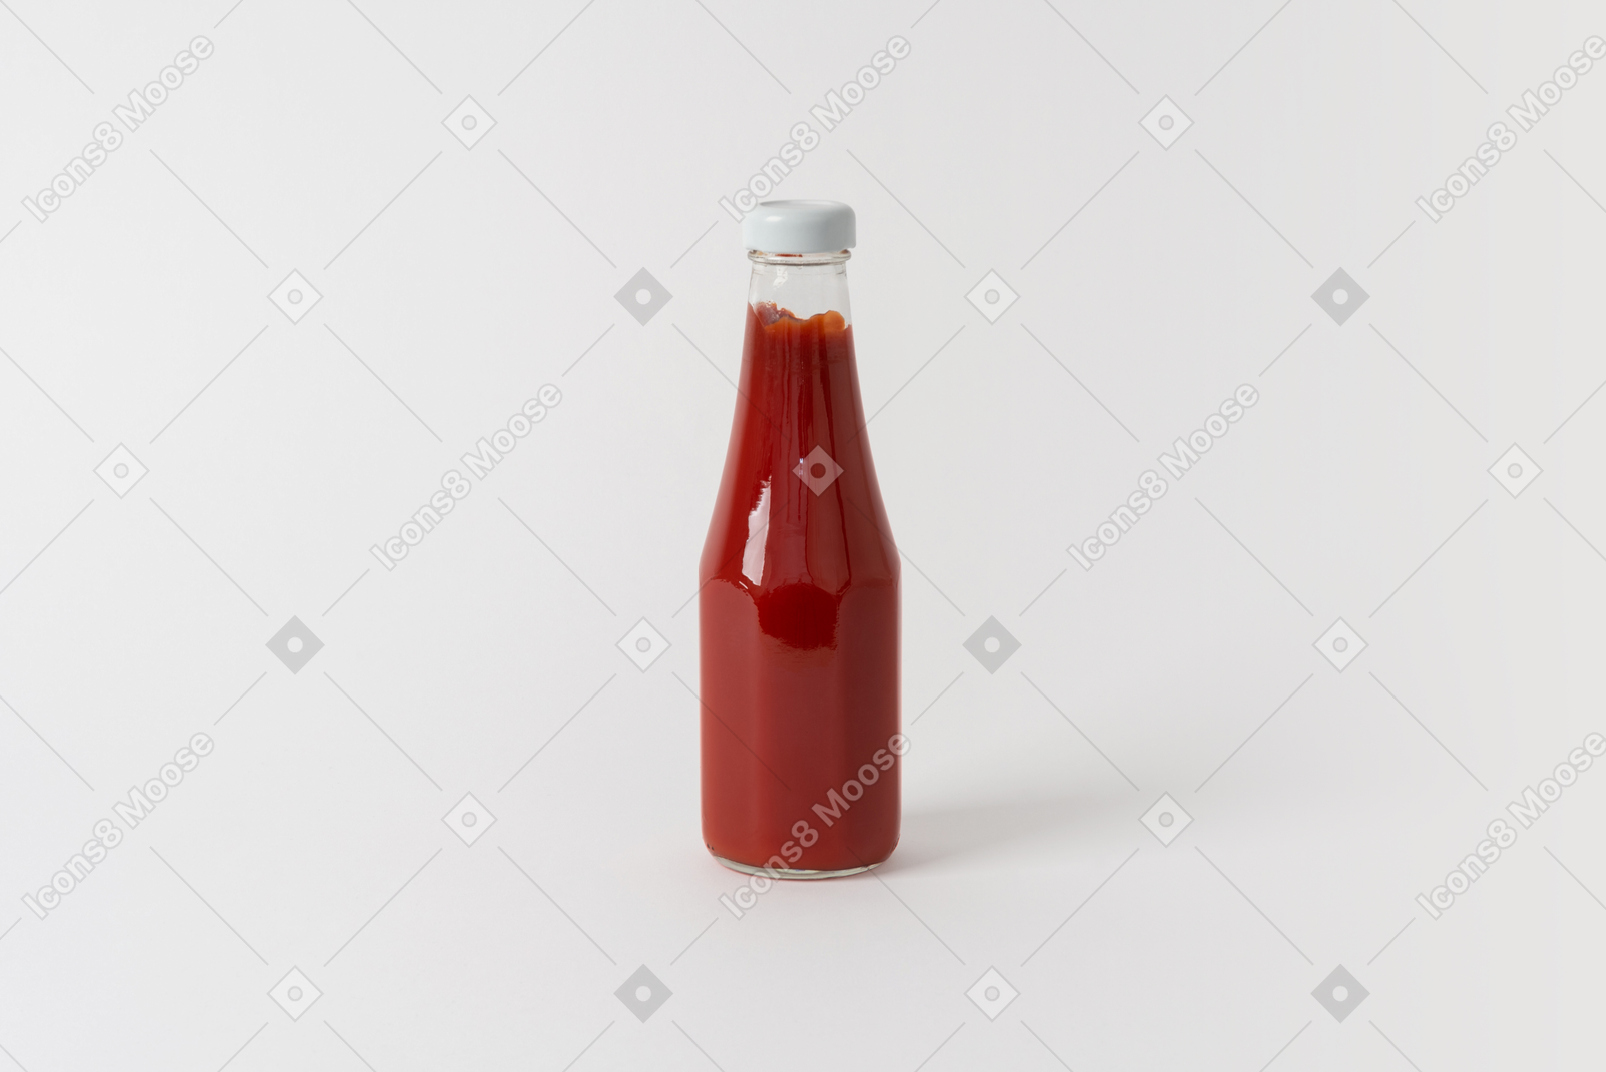 Molho de tomate em uma garrafa de vidro